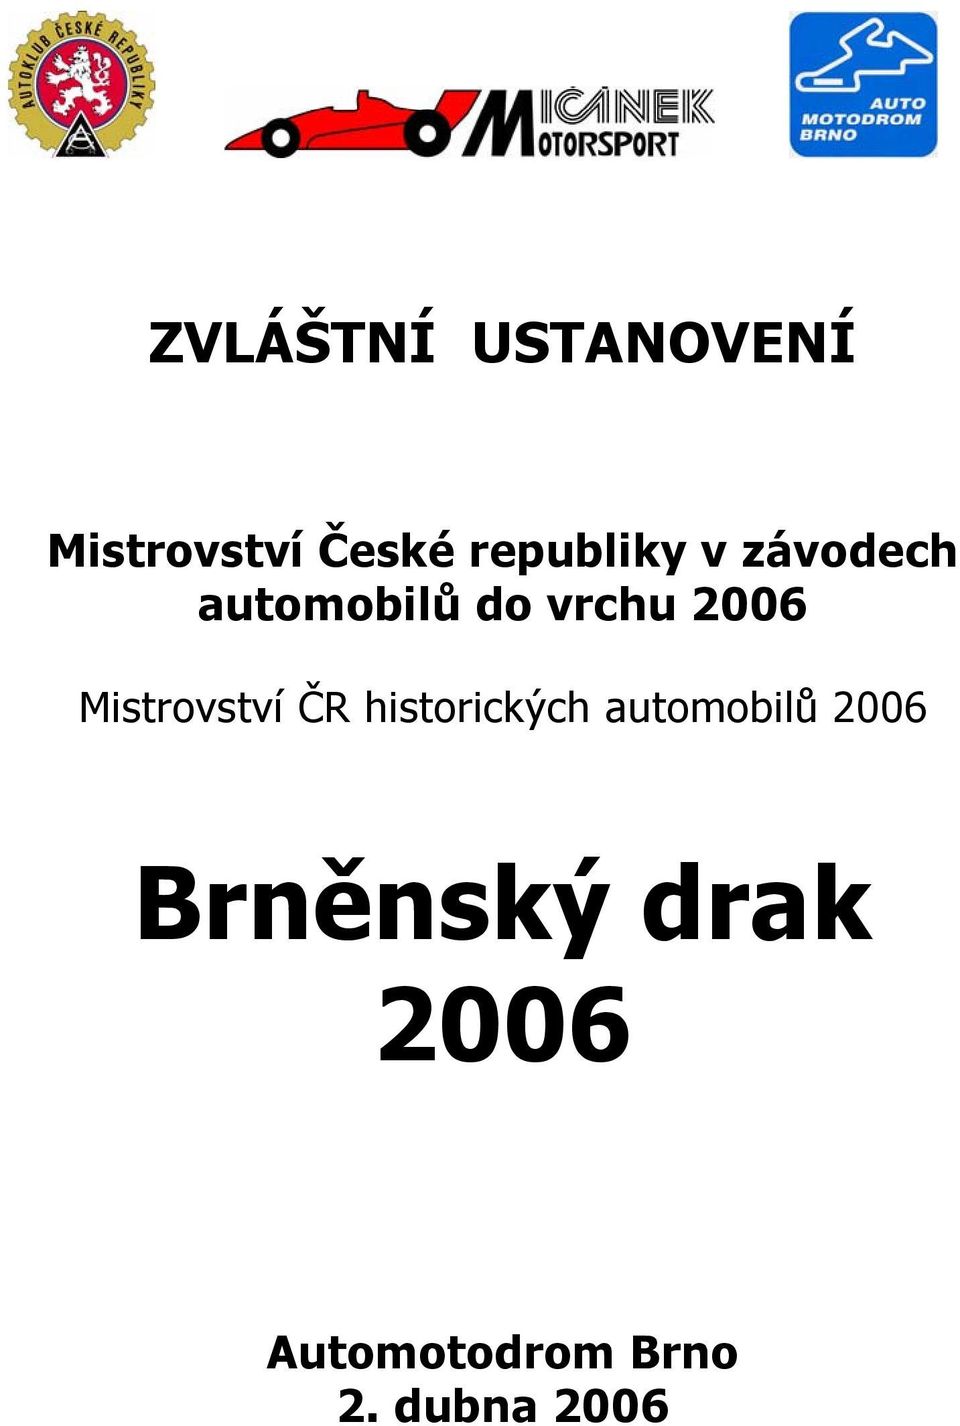 2006 Mistrovství ČR historických automobilů